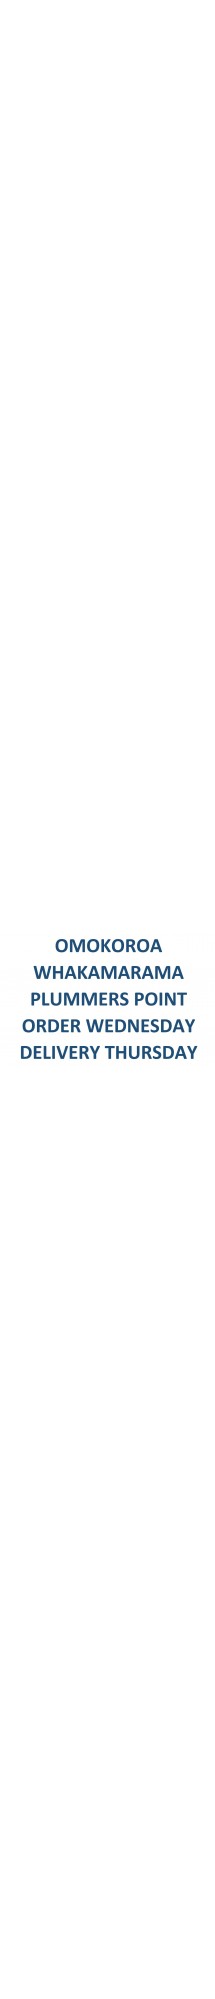 Omokoroa whakamarama plummers point